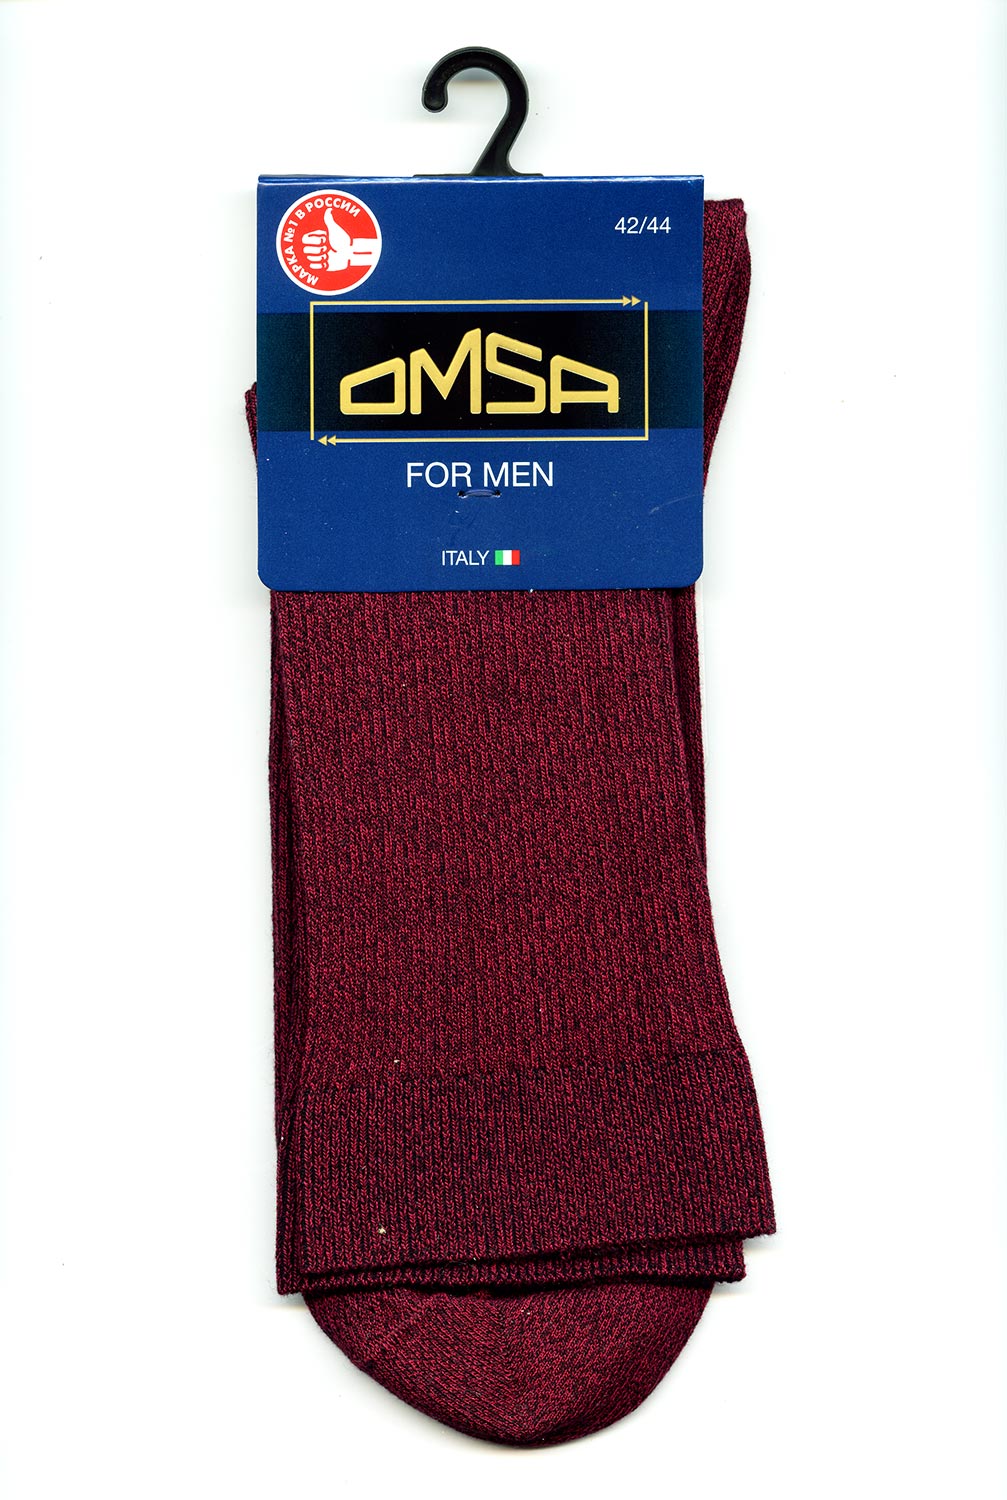 Дежурные мужские носки в рубчик Omsa 301 Comfort цвета Bordo Melange (бордо меланж) ©bracatuS